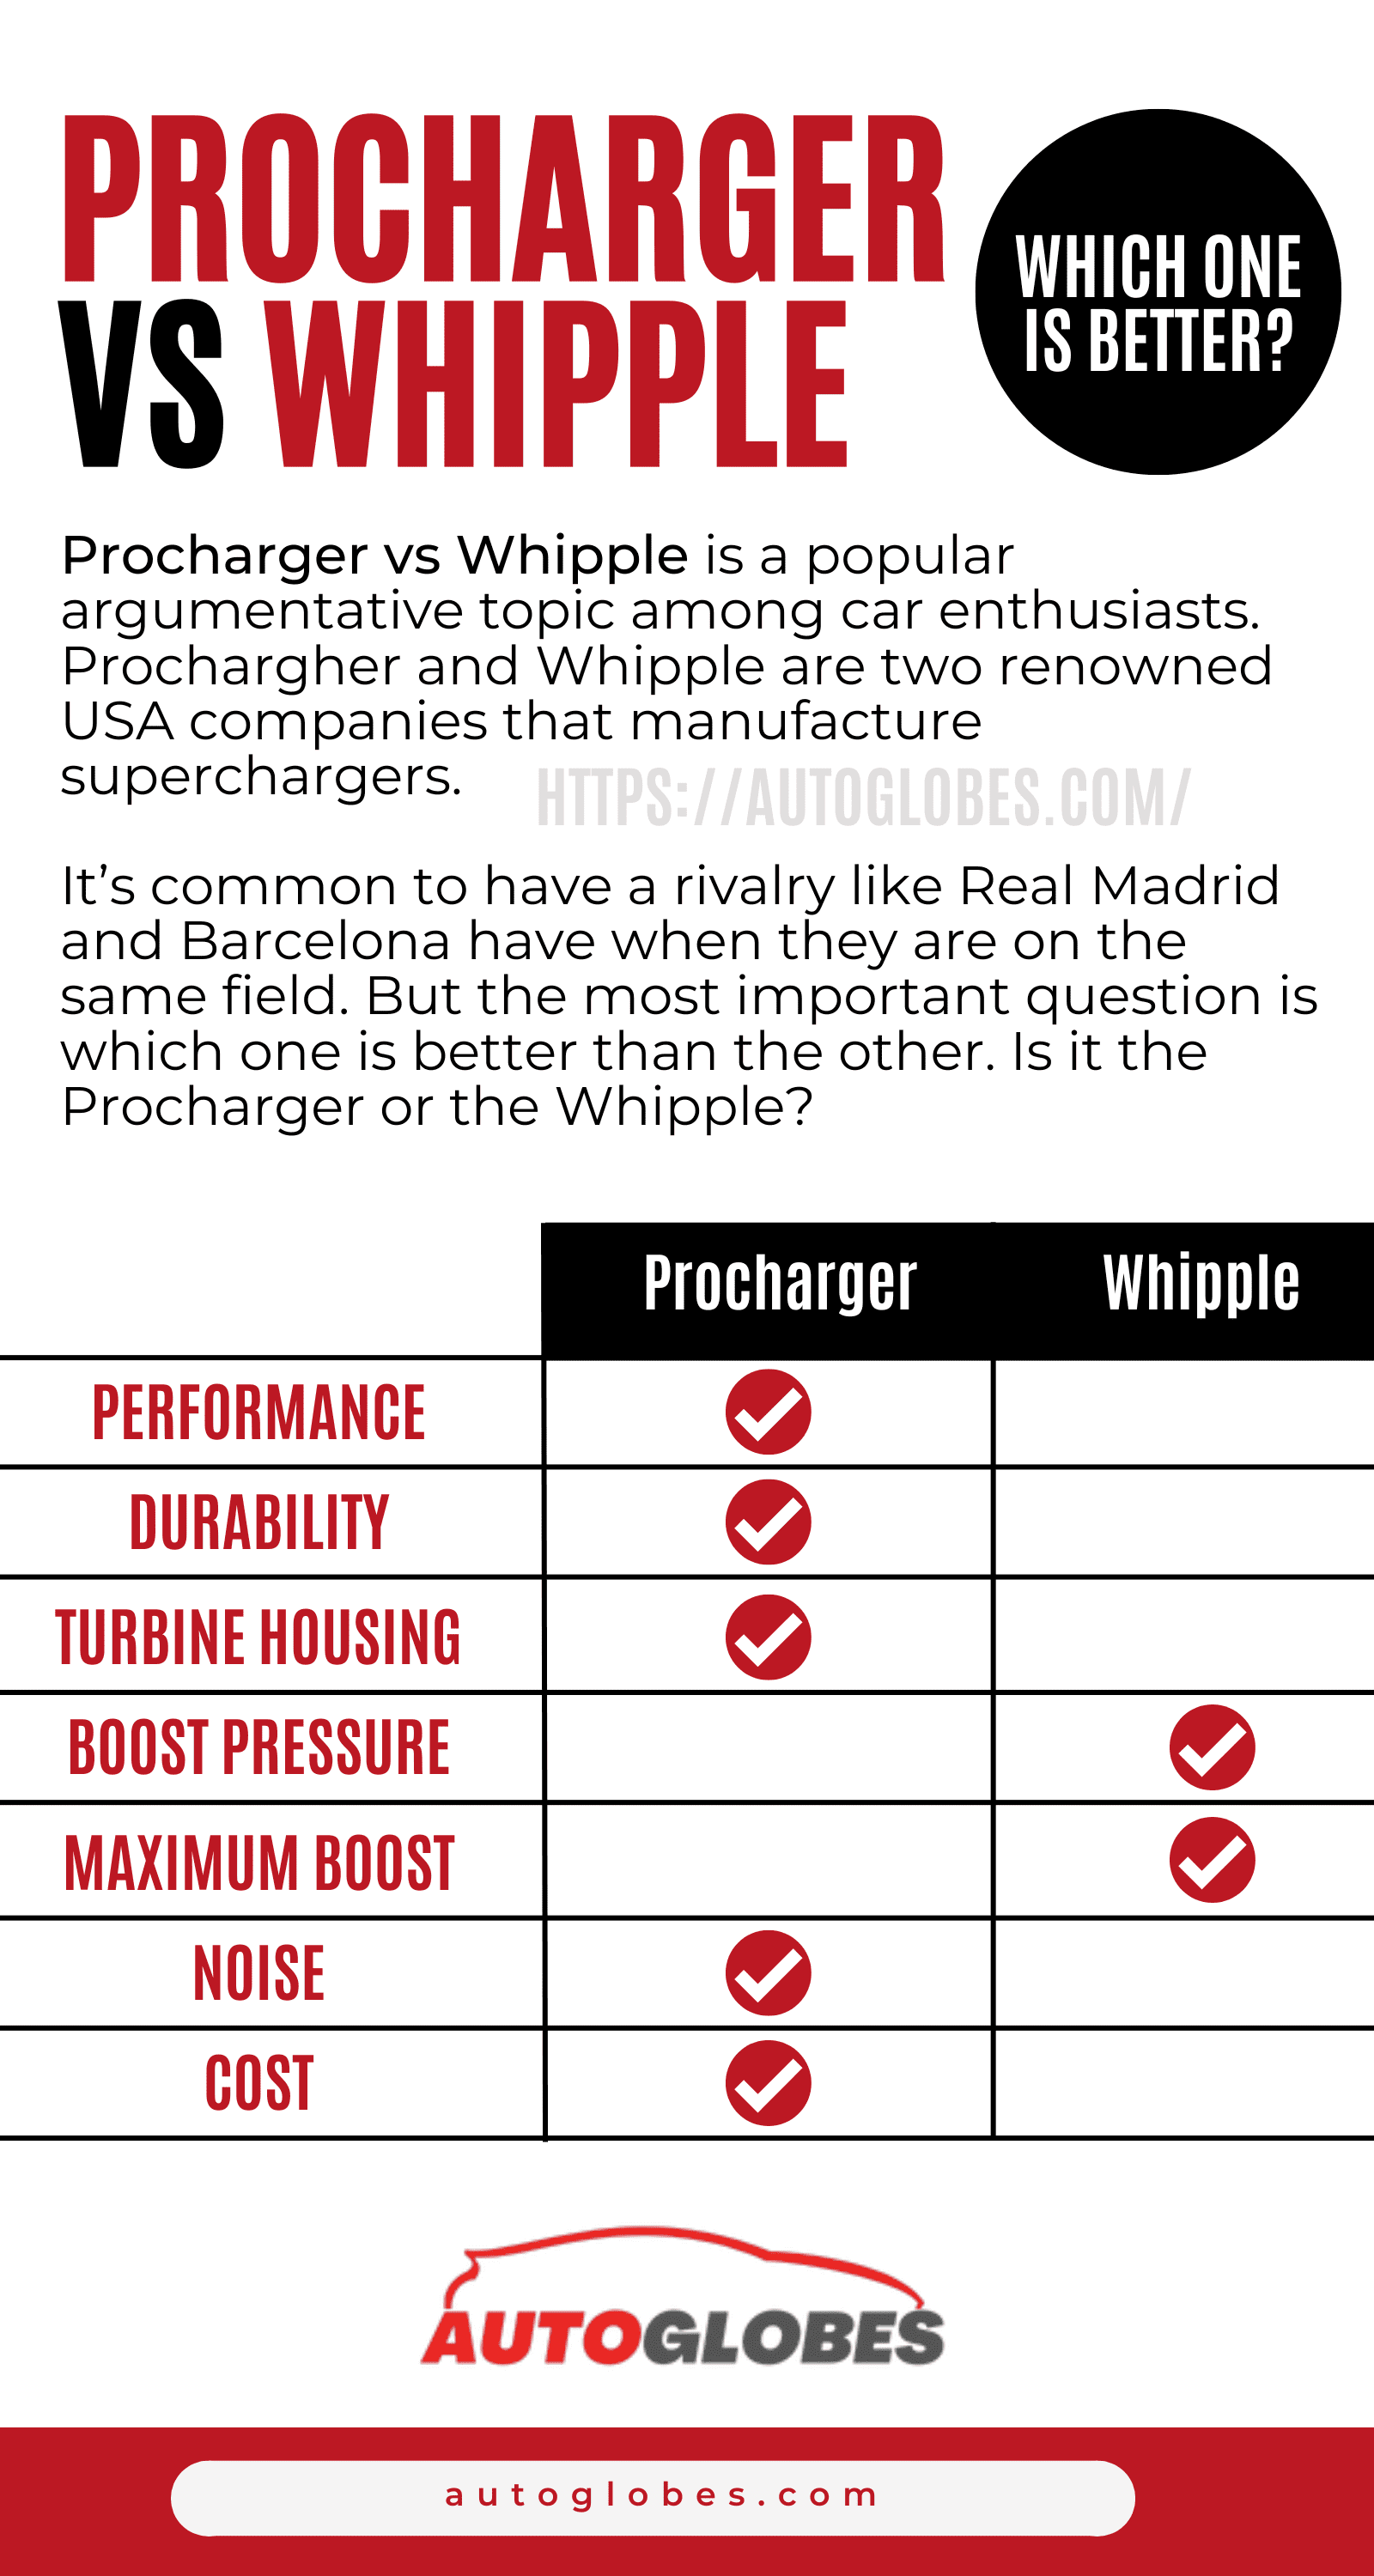 Procharger vs Whipple infographic